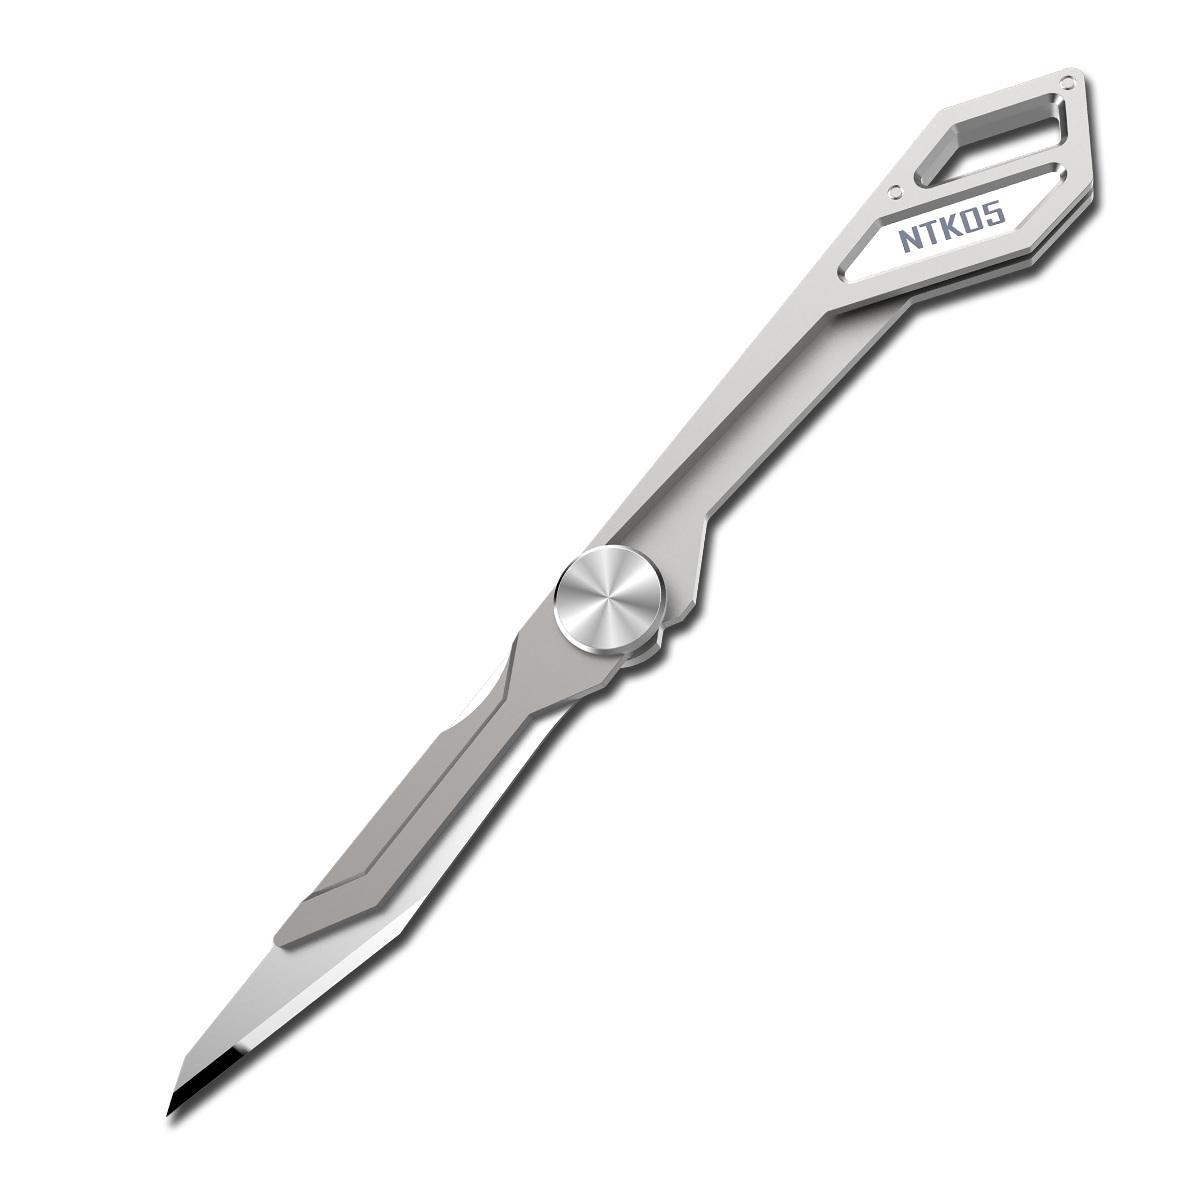 NITECORE NTKO5 97 مللي متر 4.7 جرام TC4 سكين التيتانيوم أشابة خفيفة الوزن قابلة للطي EDC سكين المفاتيح جيب سكين